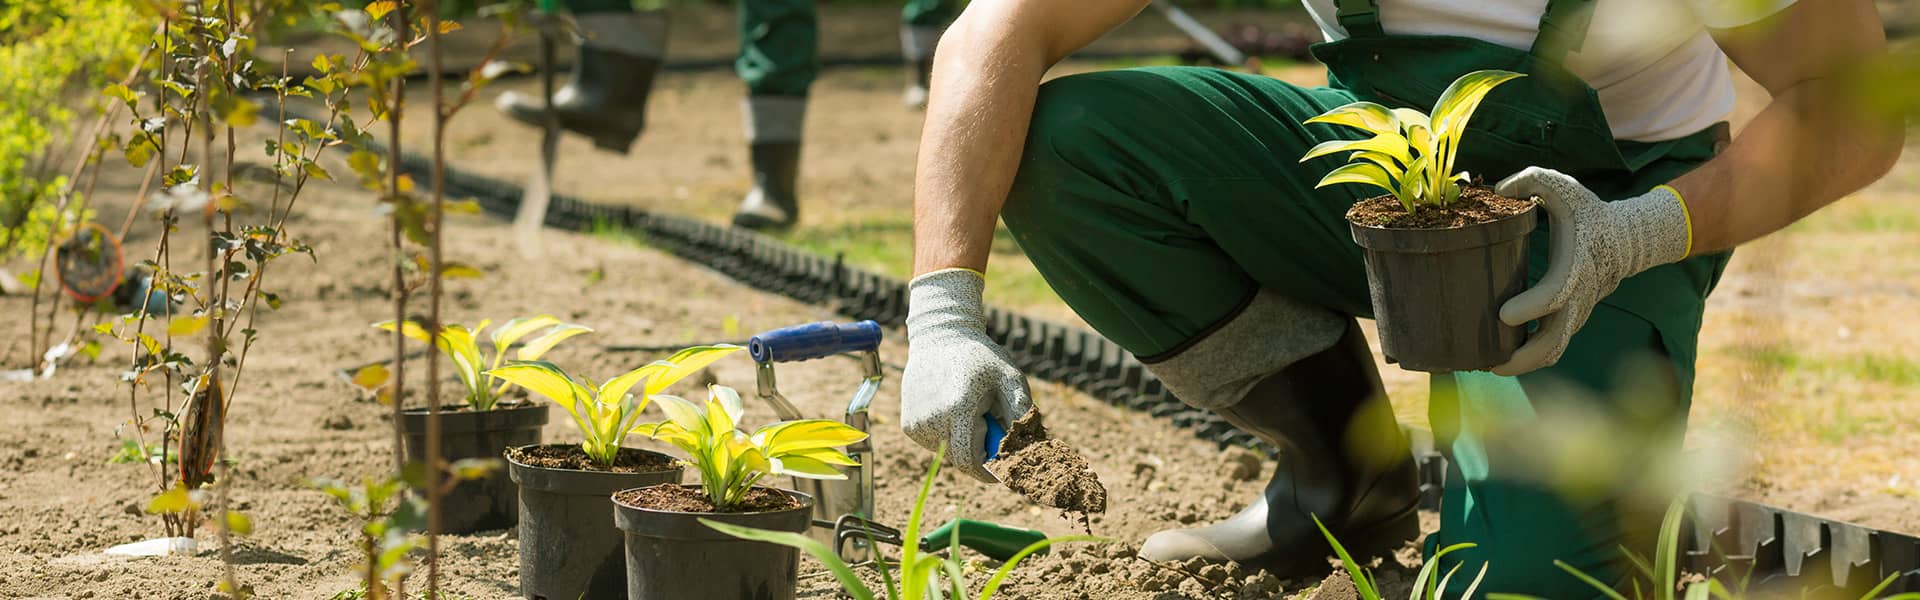 Mitarbeiter pflanzt Pflanzen in Erde ein